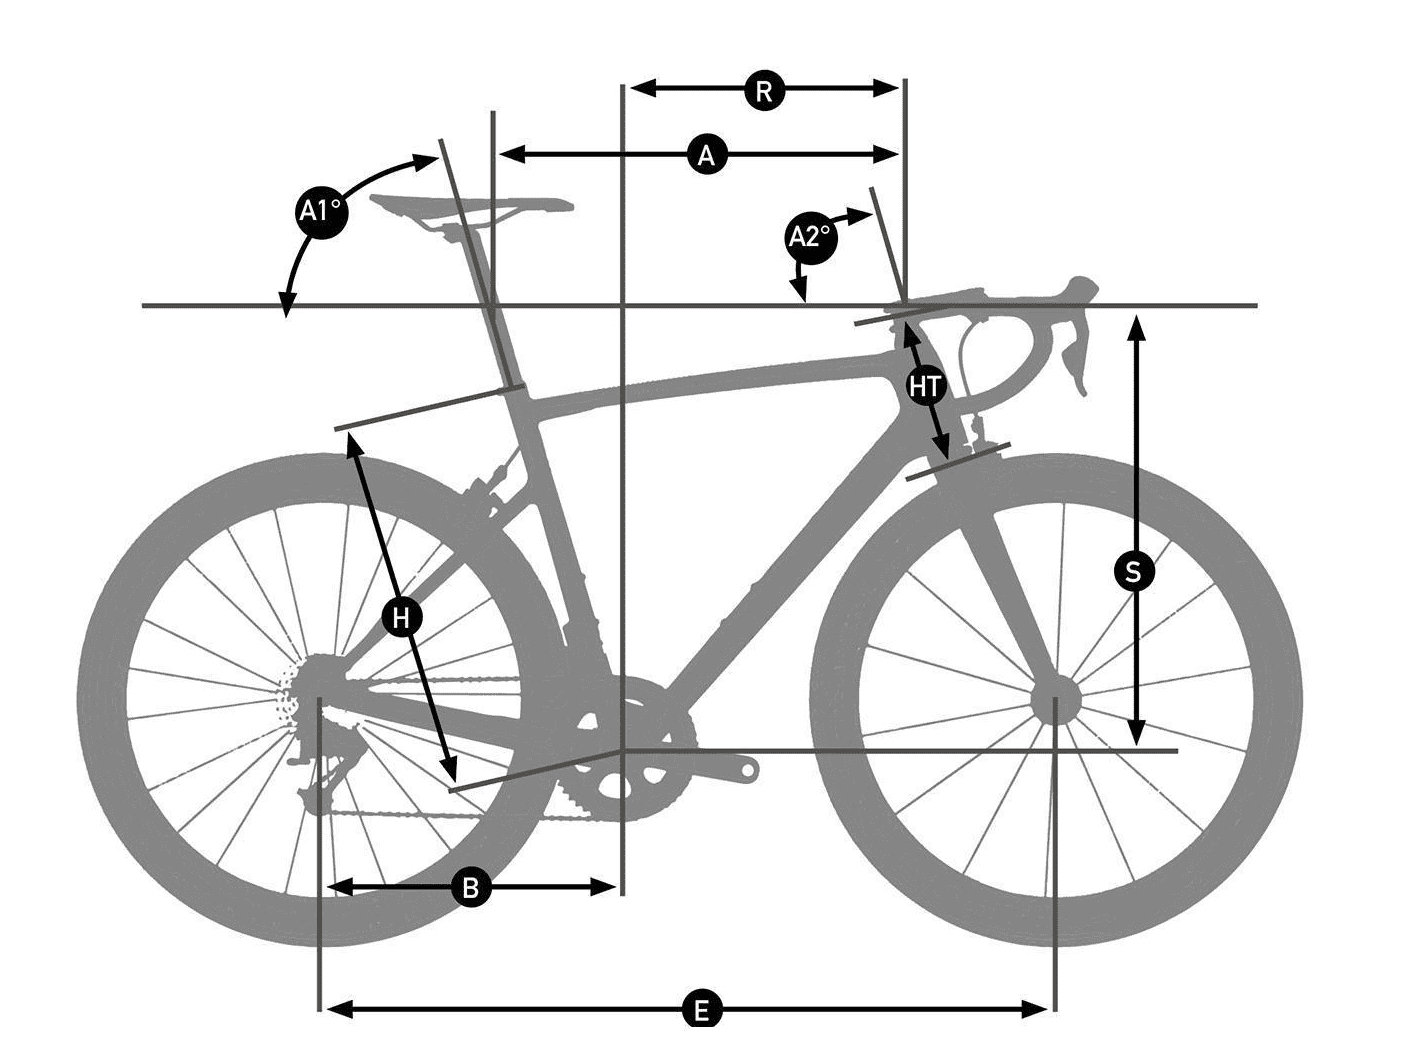 Schemat roweru i elementy składowe roweru